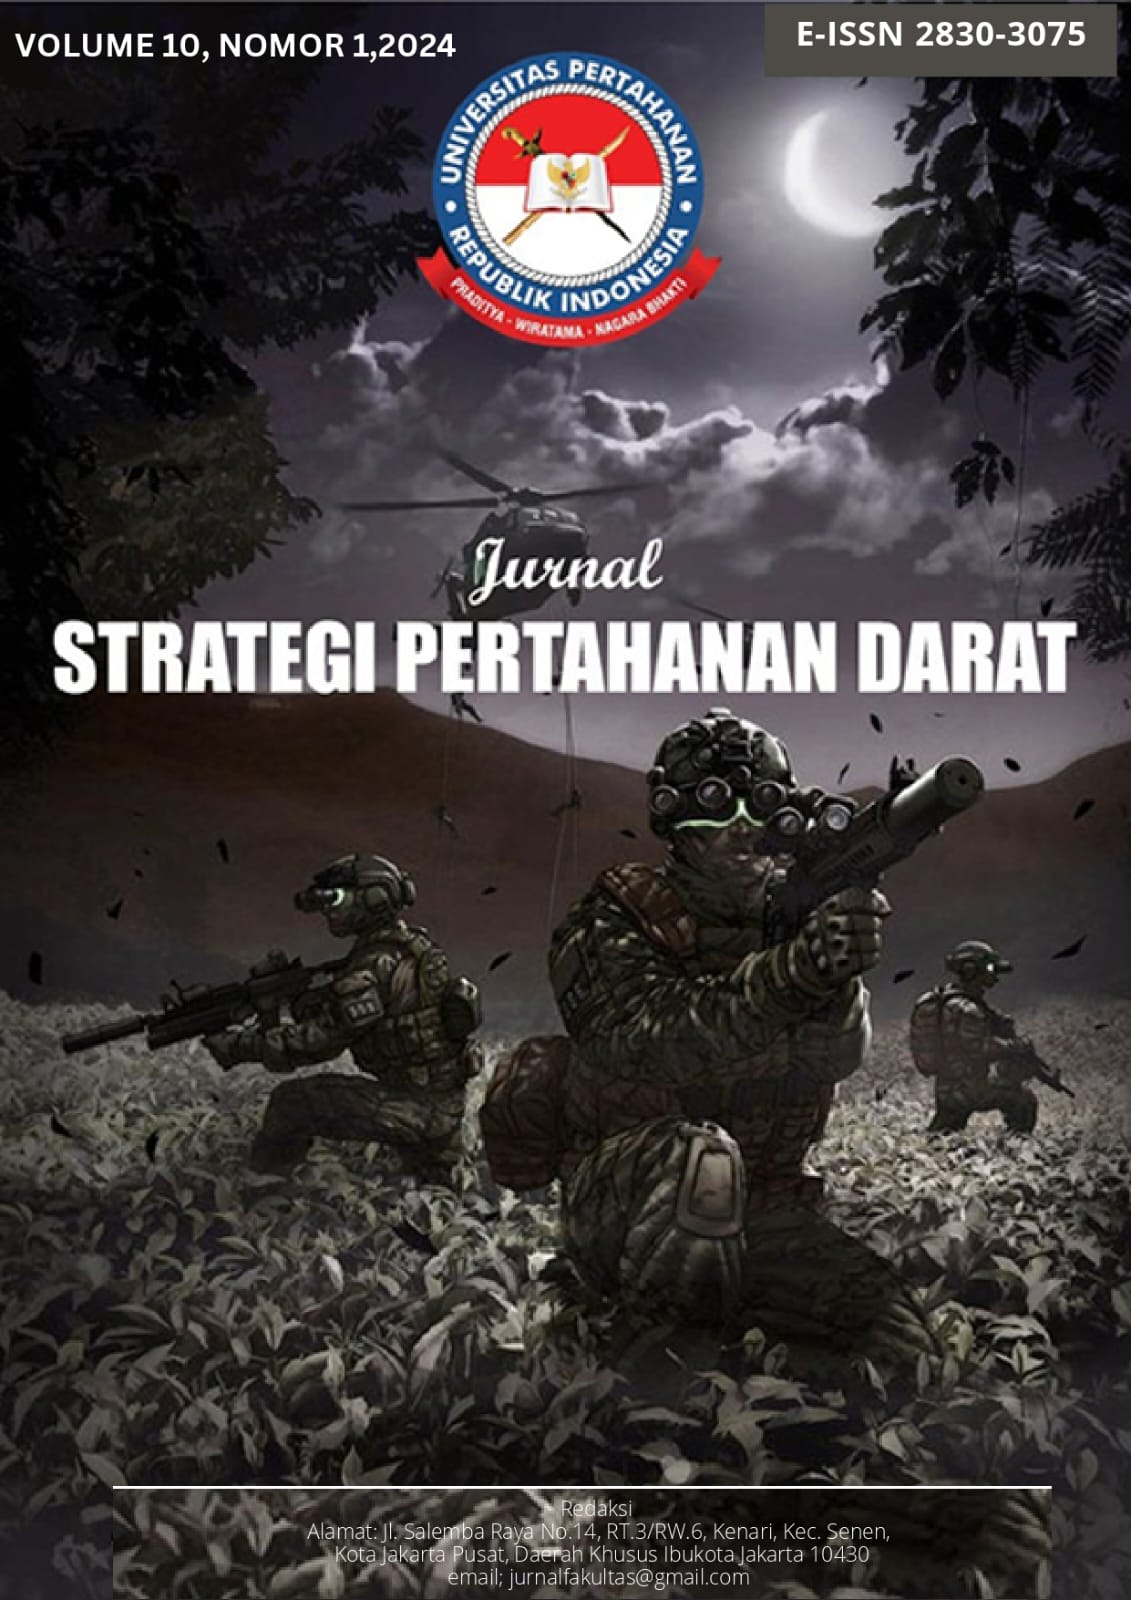 					Lihat Vol 10 No 1 (2024): Jurnal Strategi Pertahanan Darat
				